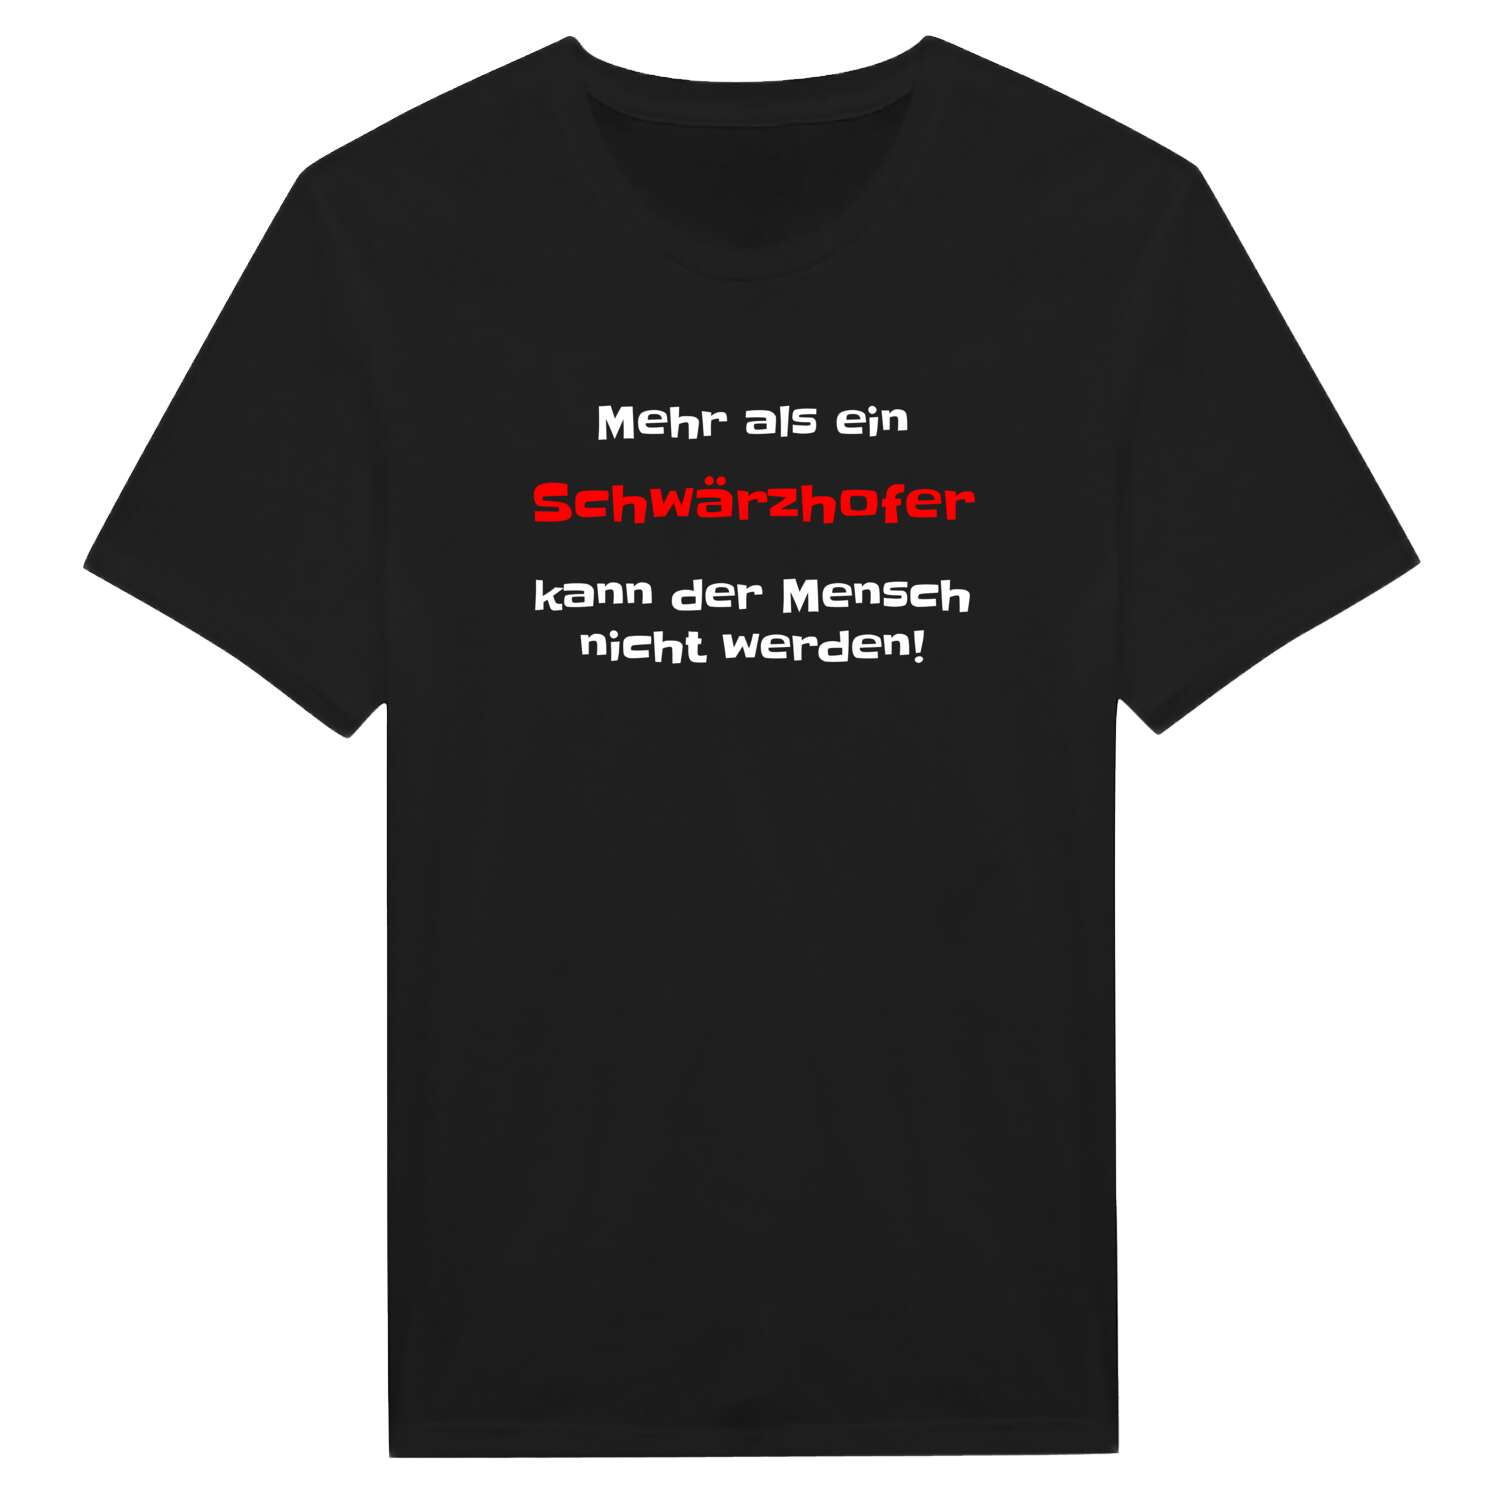 Schwärzhof T-Shirt »Mehr als ein«